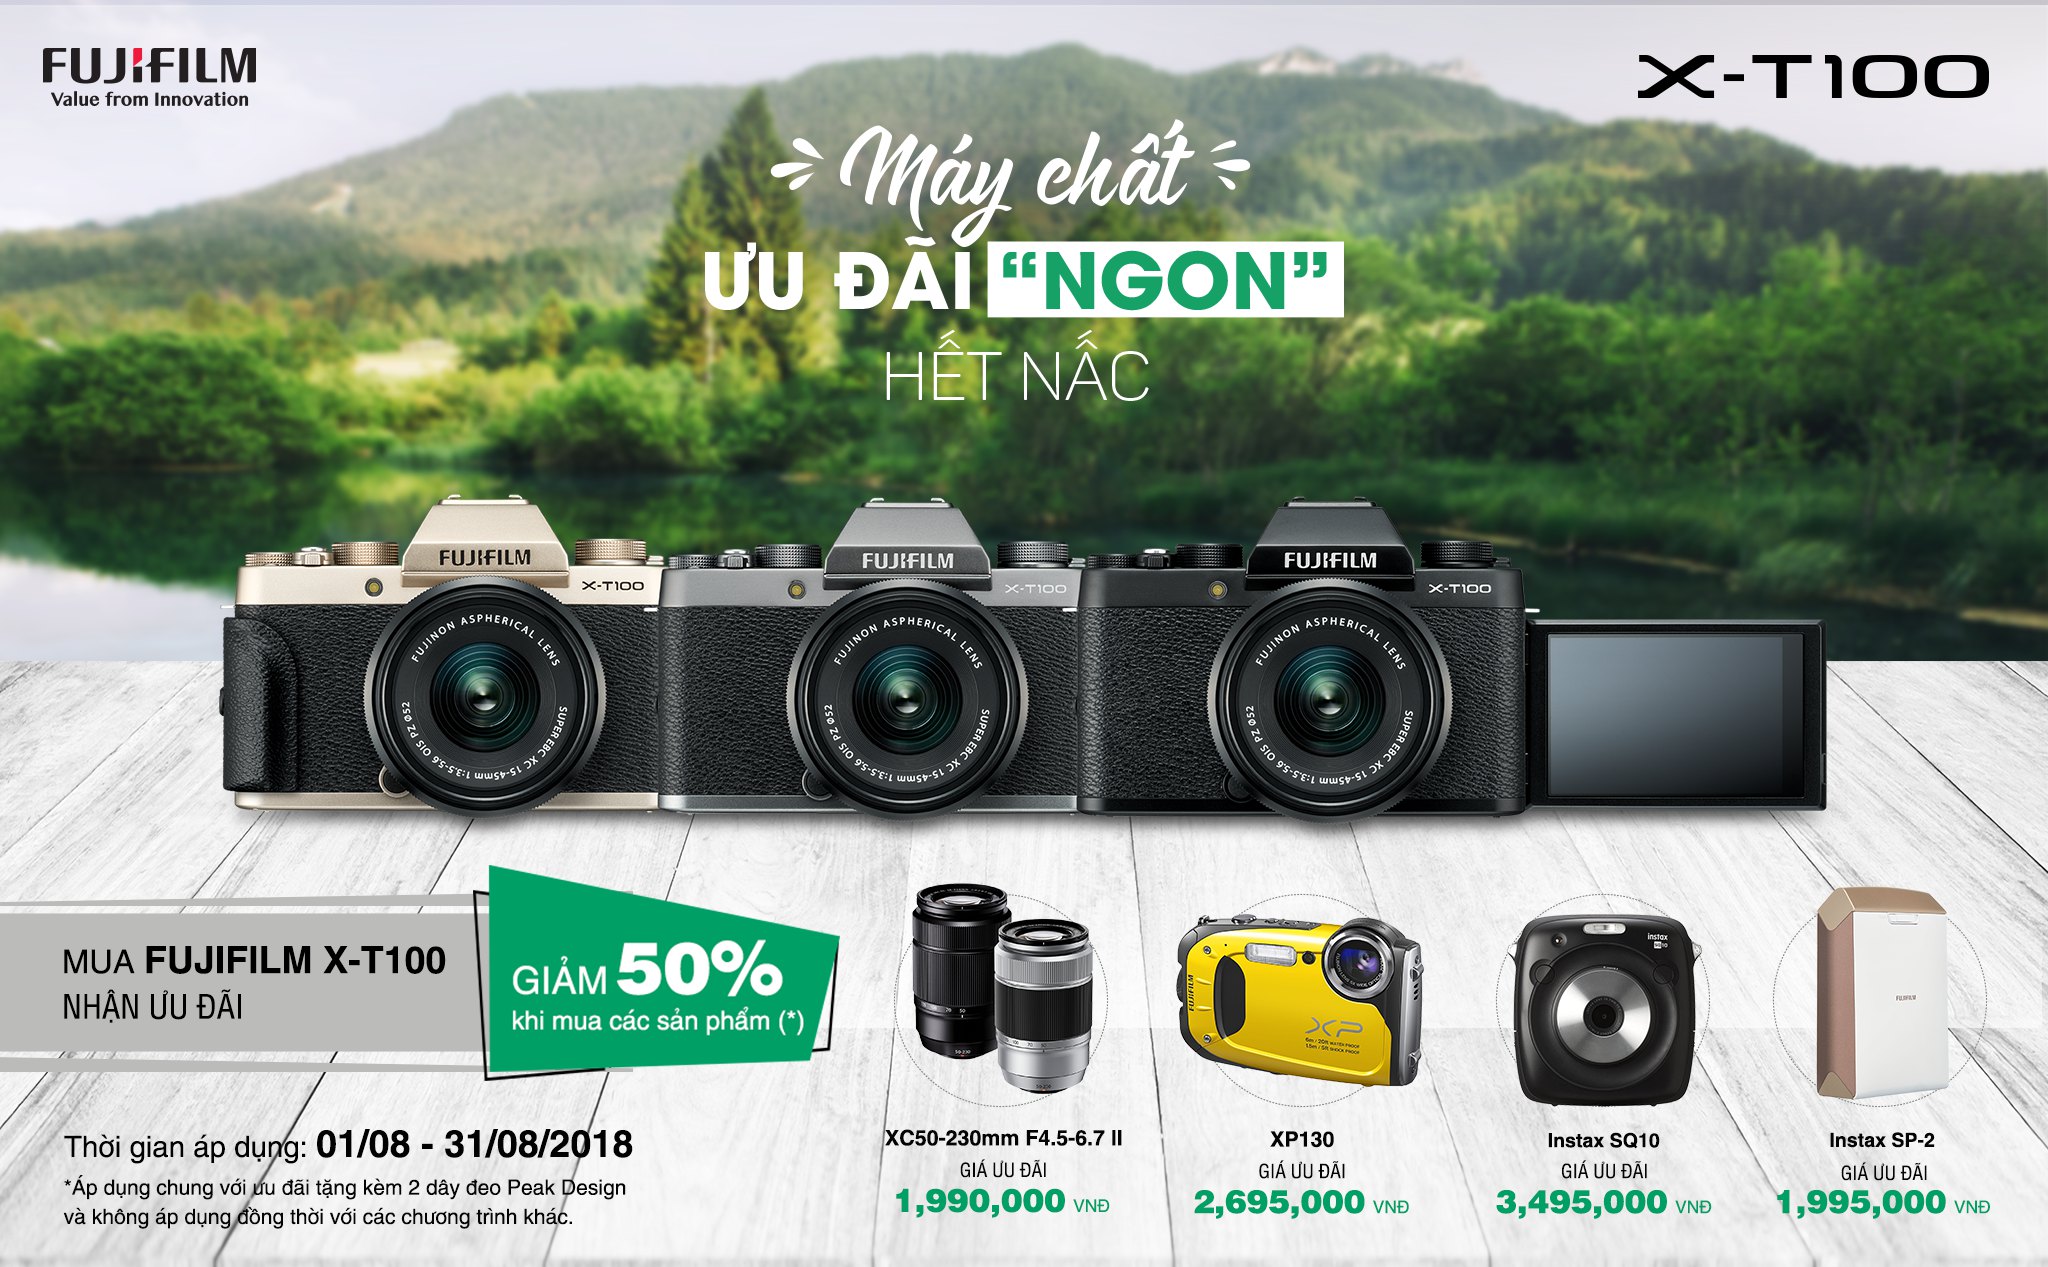 [QC] Tháng 8 hè hừng hực – Cất lực hốt deal “NGON” cùng máy ảnh Fujifilm X-T100